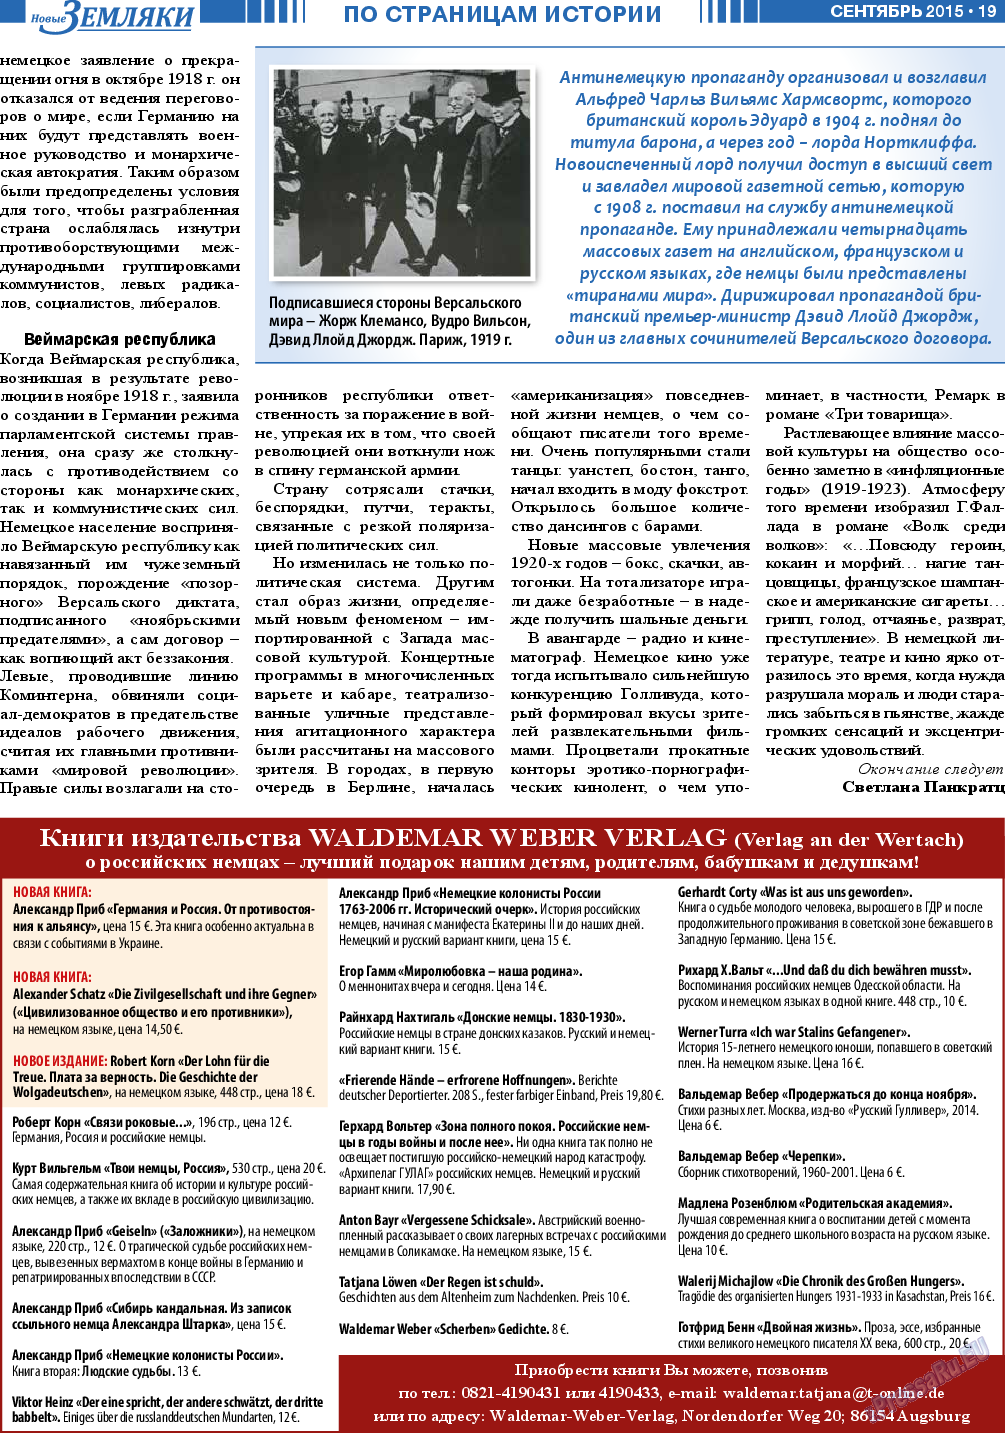 Новые Земляки, газета. 2015 №9 стр.19